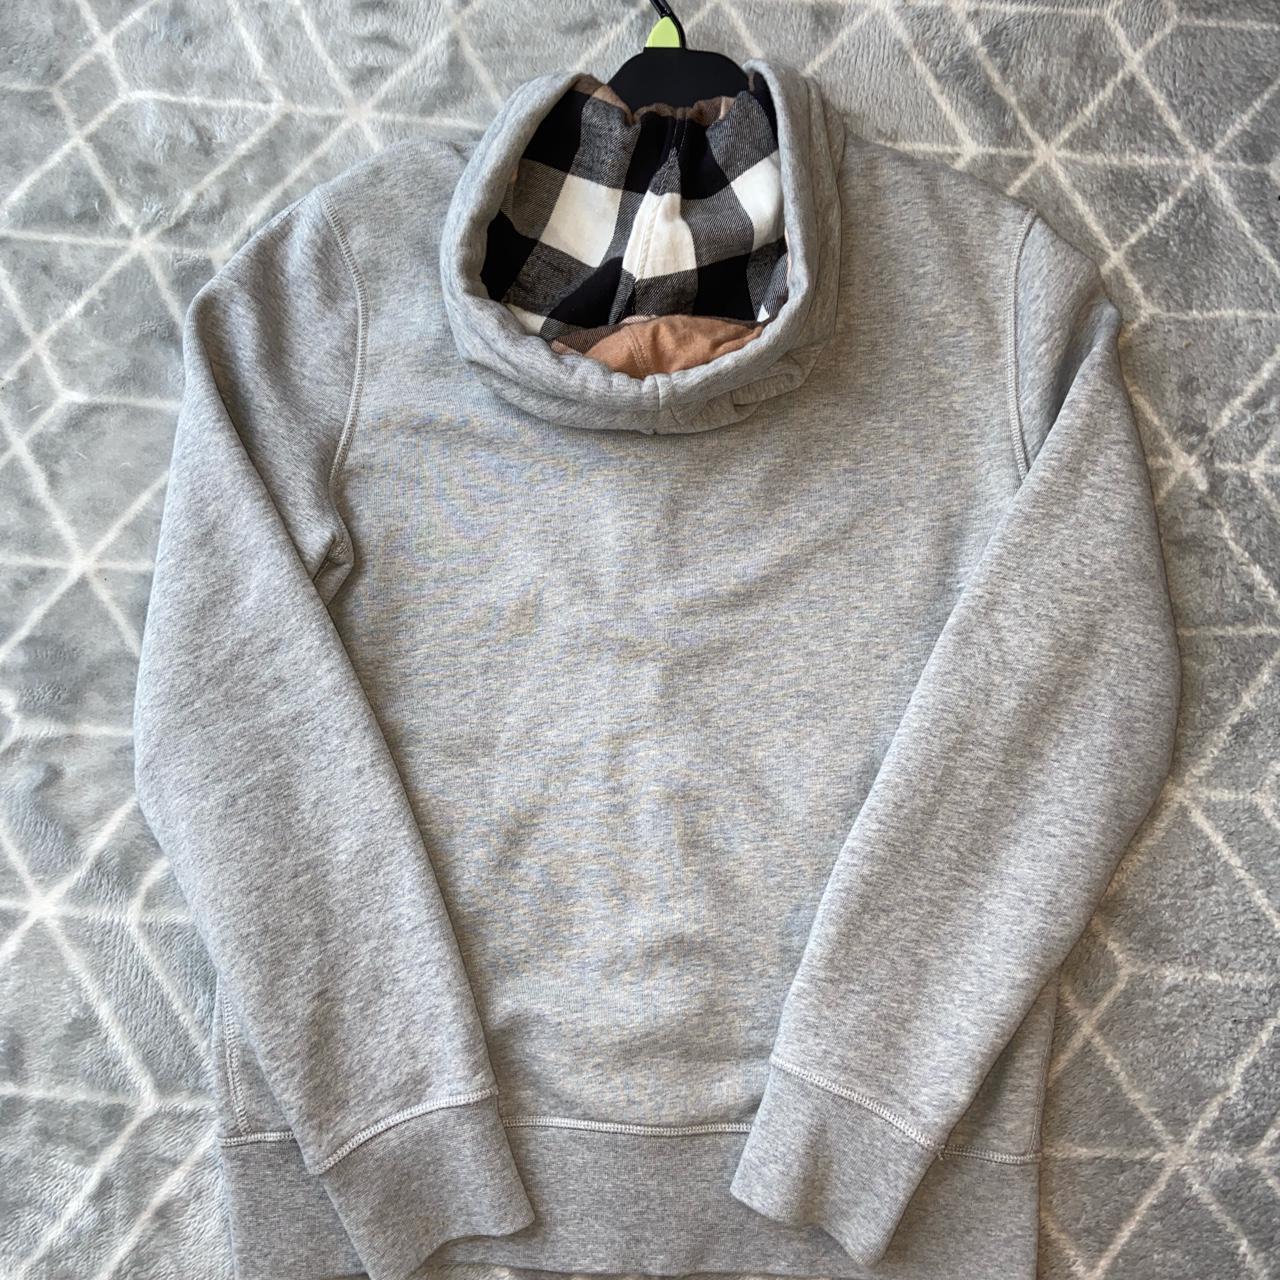 Product Image 3 - Burberry Hoodie - Medium

Burberry hoodie